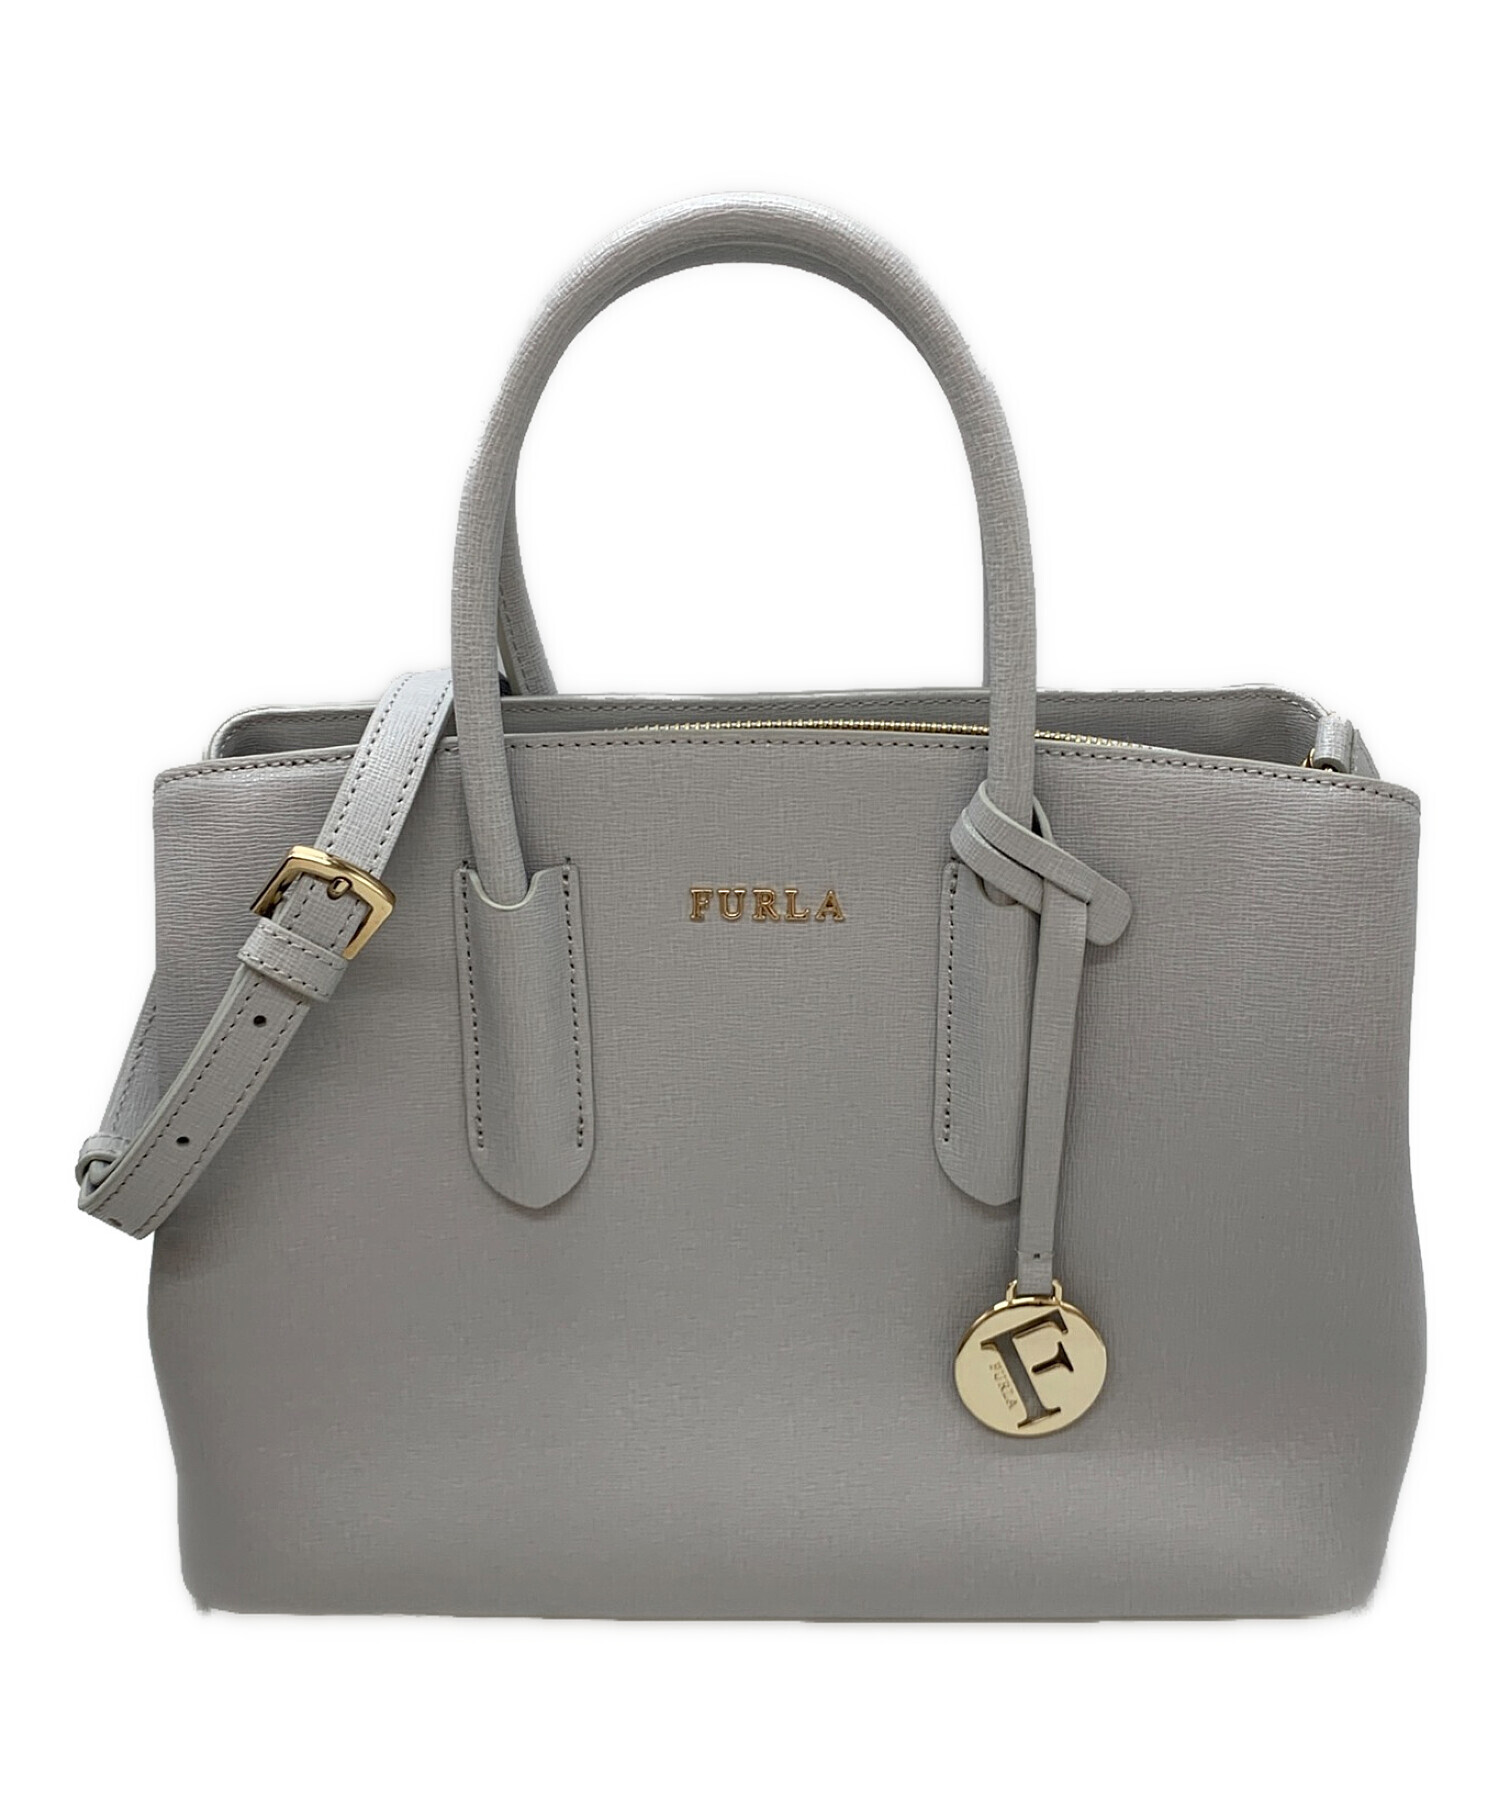 匿名配送】FURLA TESSA 2WAY ハンドバッグ ショルダーバッグ他でも出品してるので購入前に - ショルダーバッグ